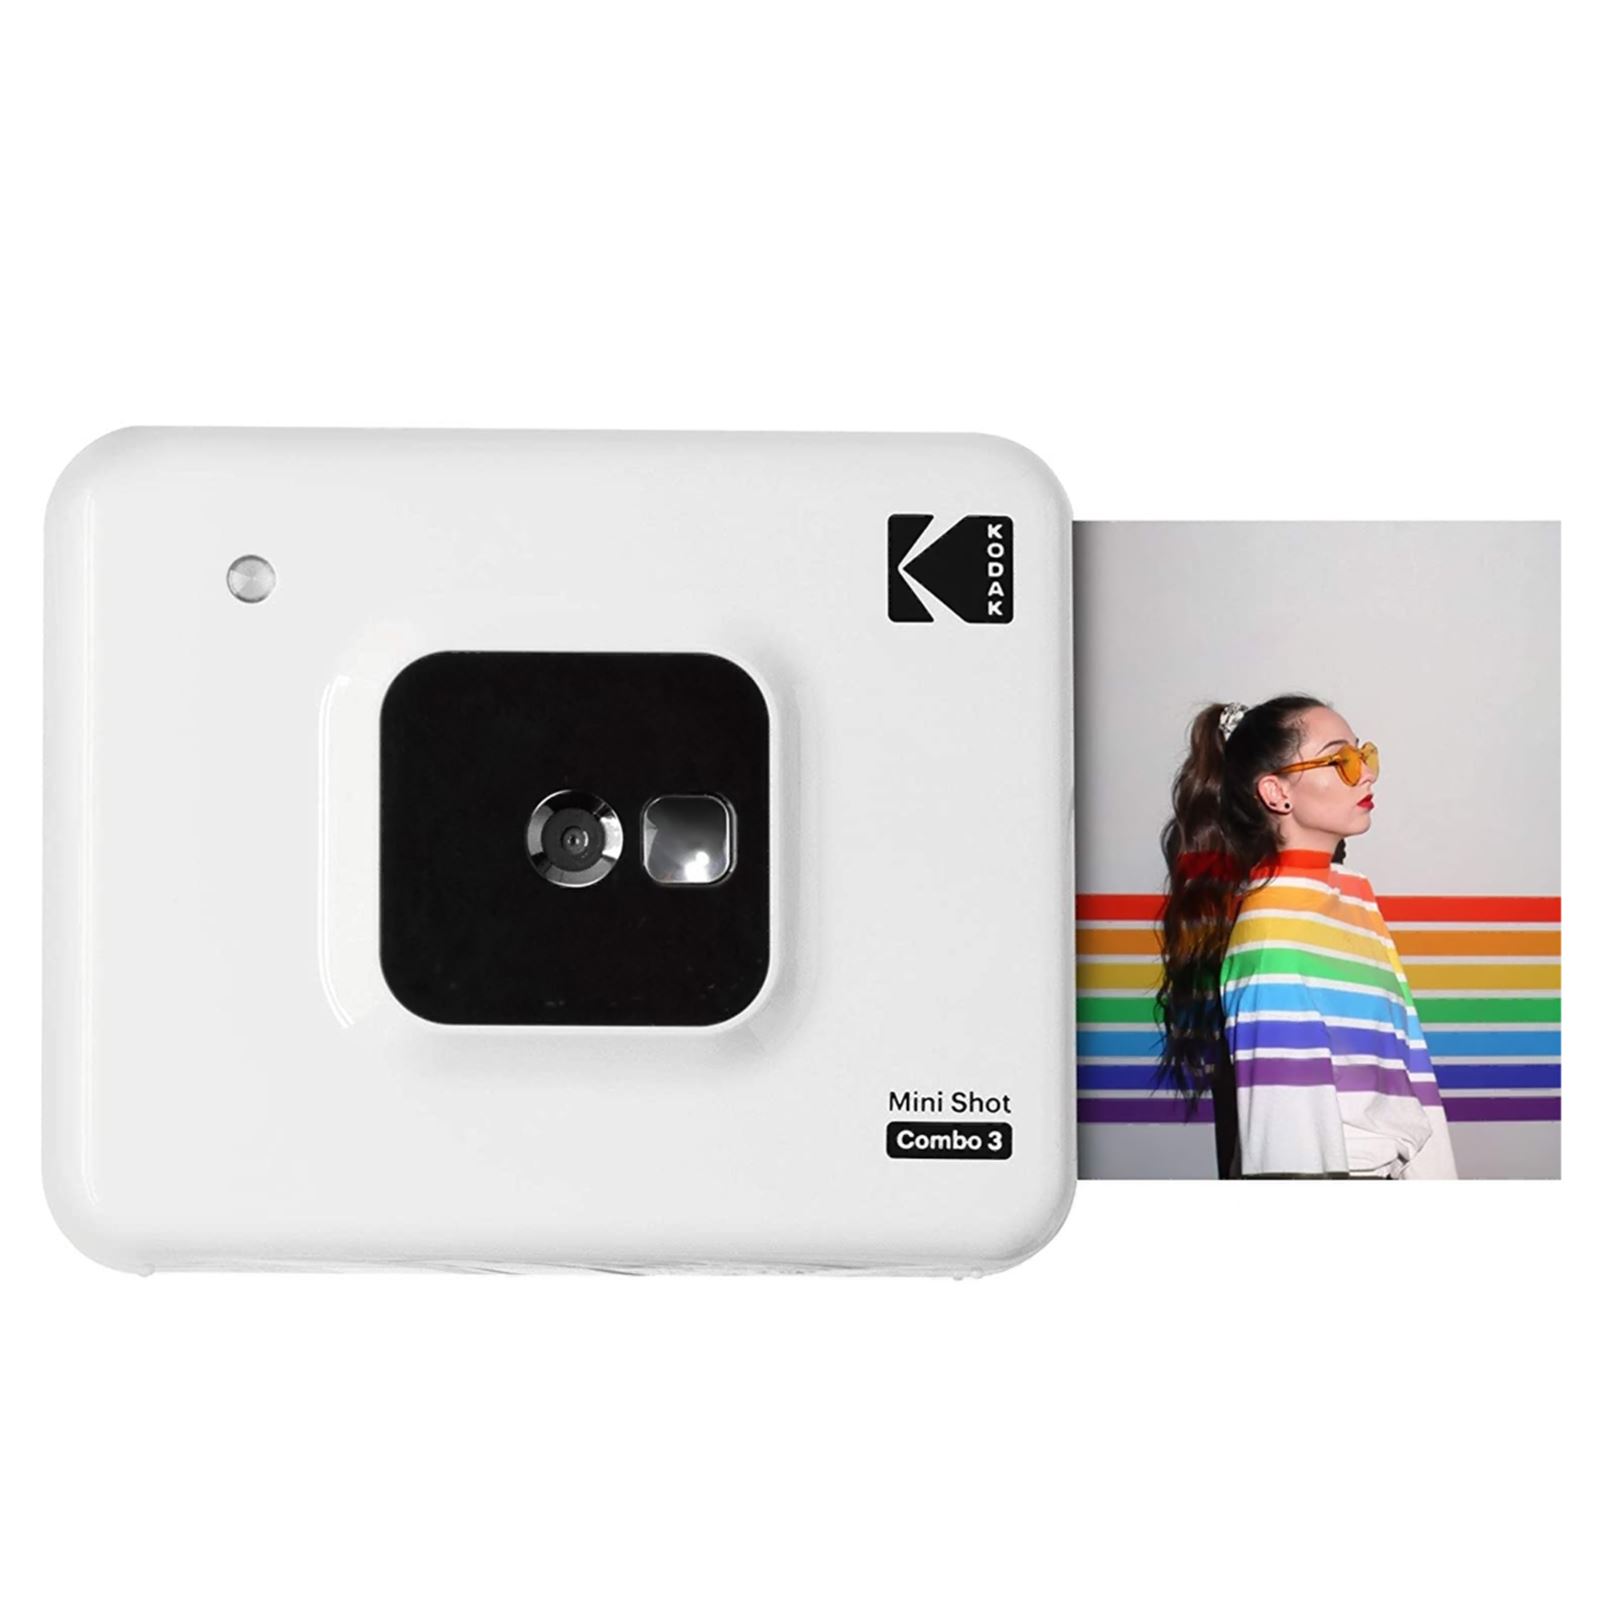 Kodak Mini Shot Combo 3 - C300 Anında Baskı Dijital Fotoğraf Makinesi Beyaz (ICRG-330 Hediyeli)